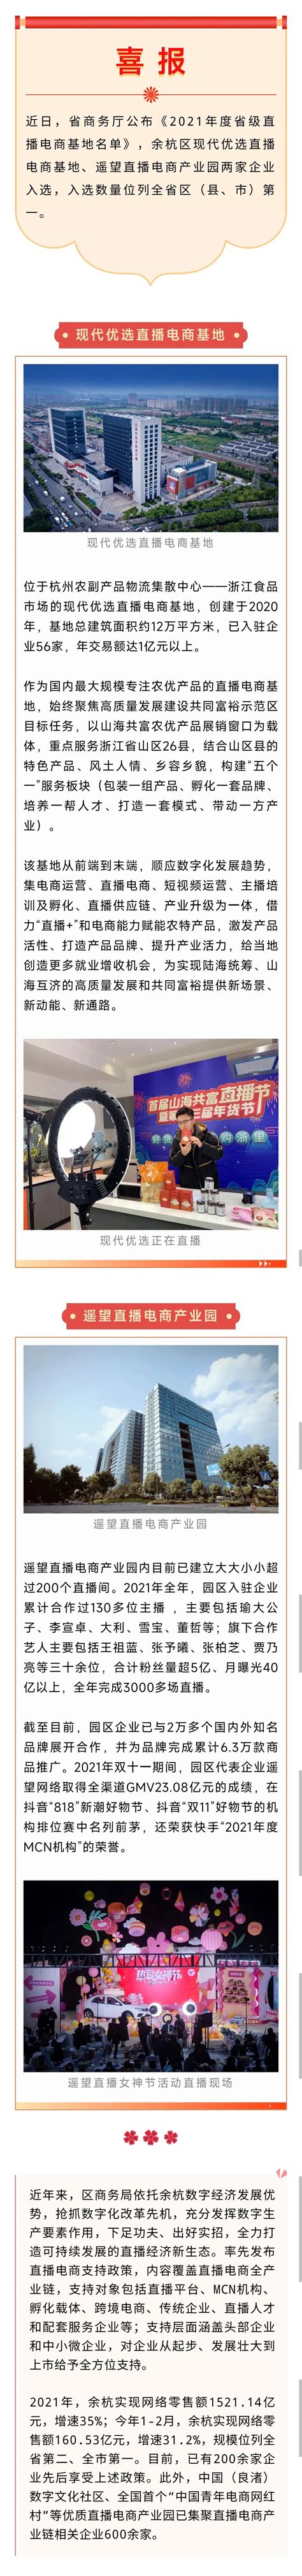 余杭区两家企业入选省级直播电商基地名单——2022杭州电商展